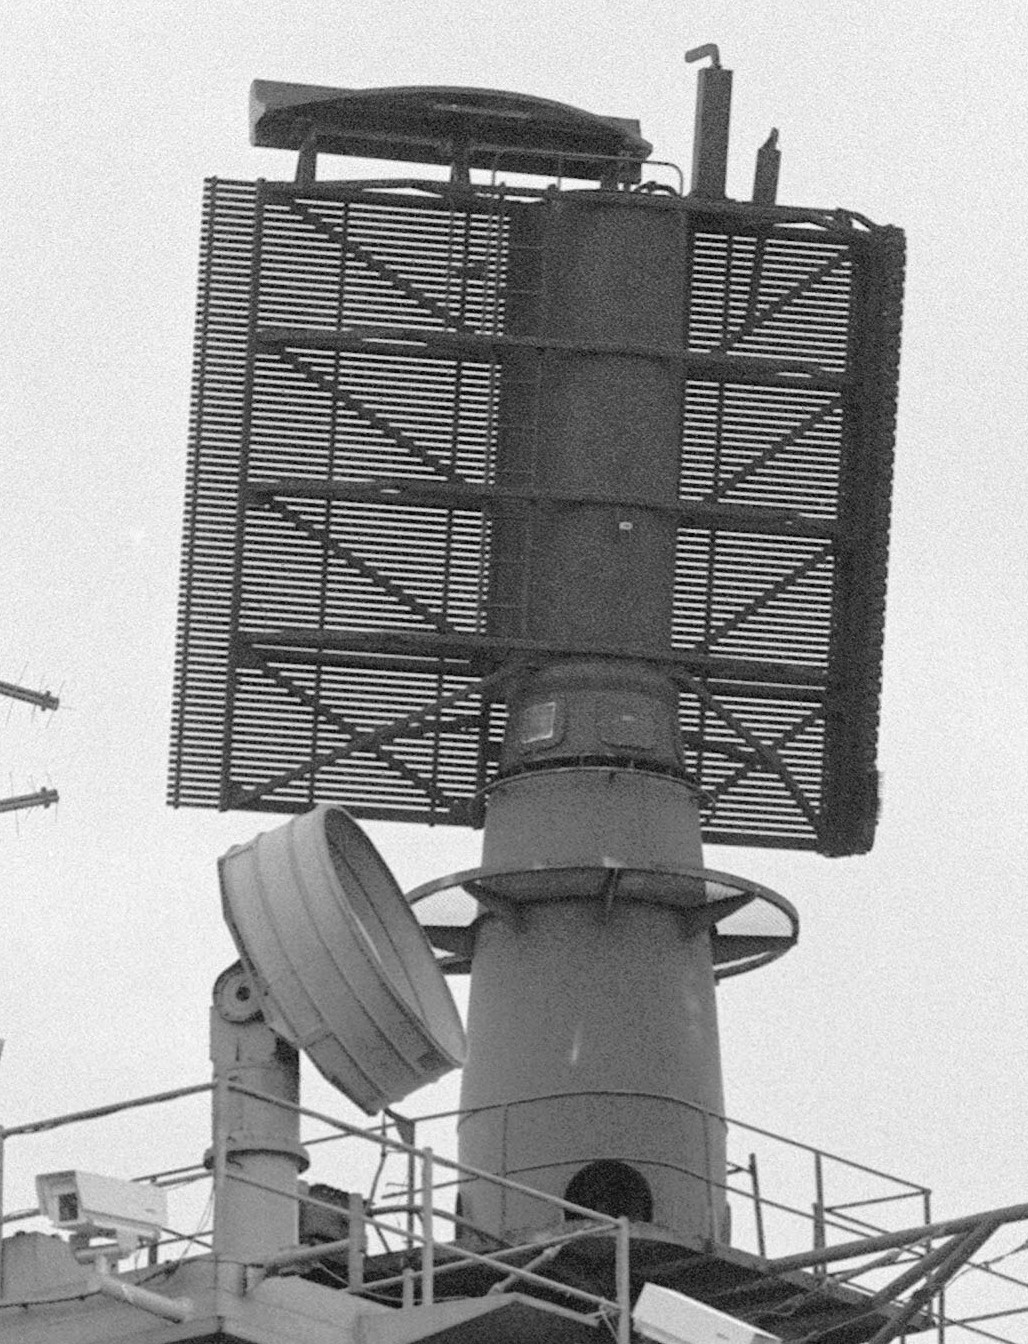 cv-66 uss america kitty hawk class aircraft carrier us navy sps-48 radar 80